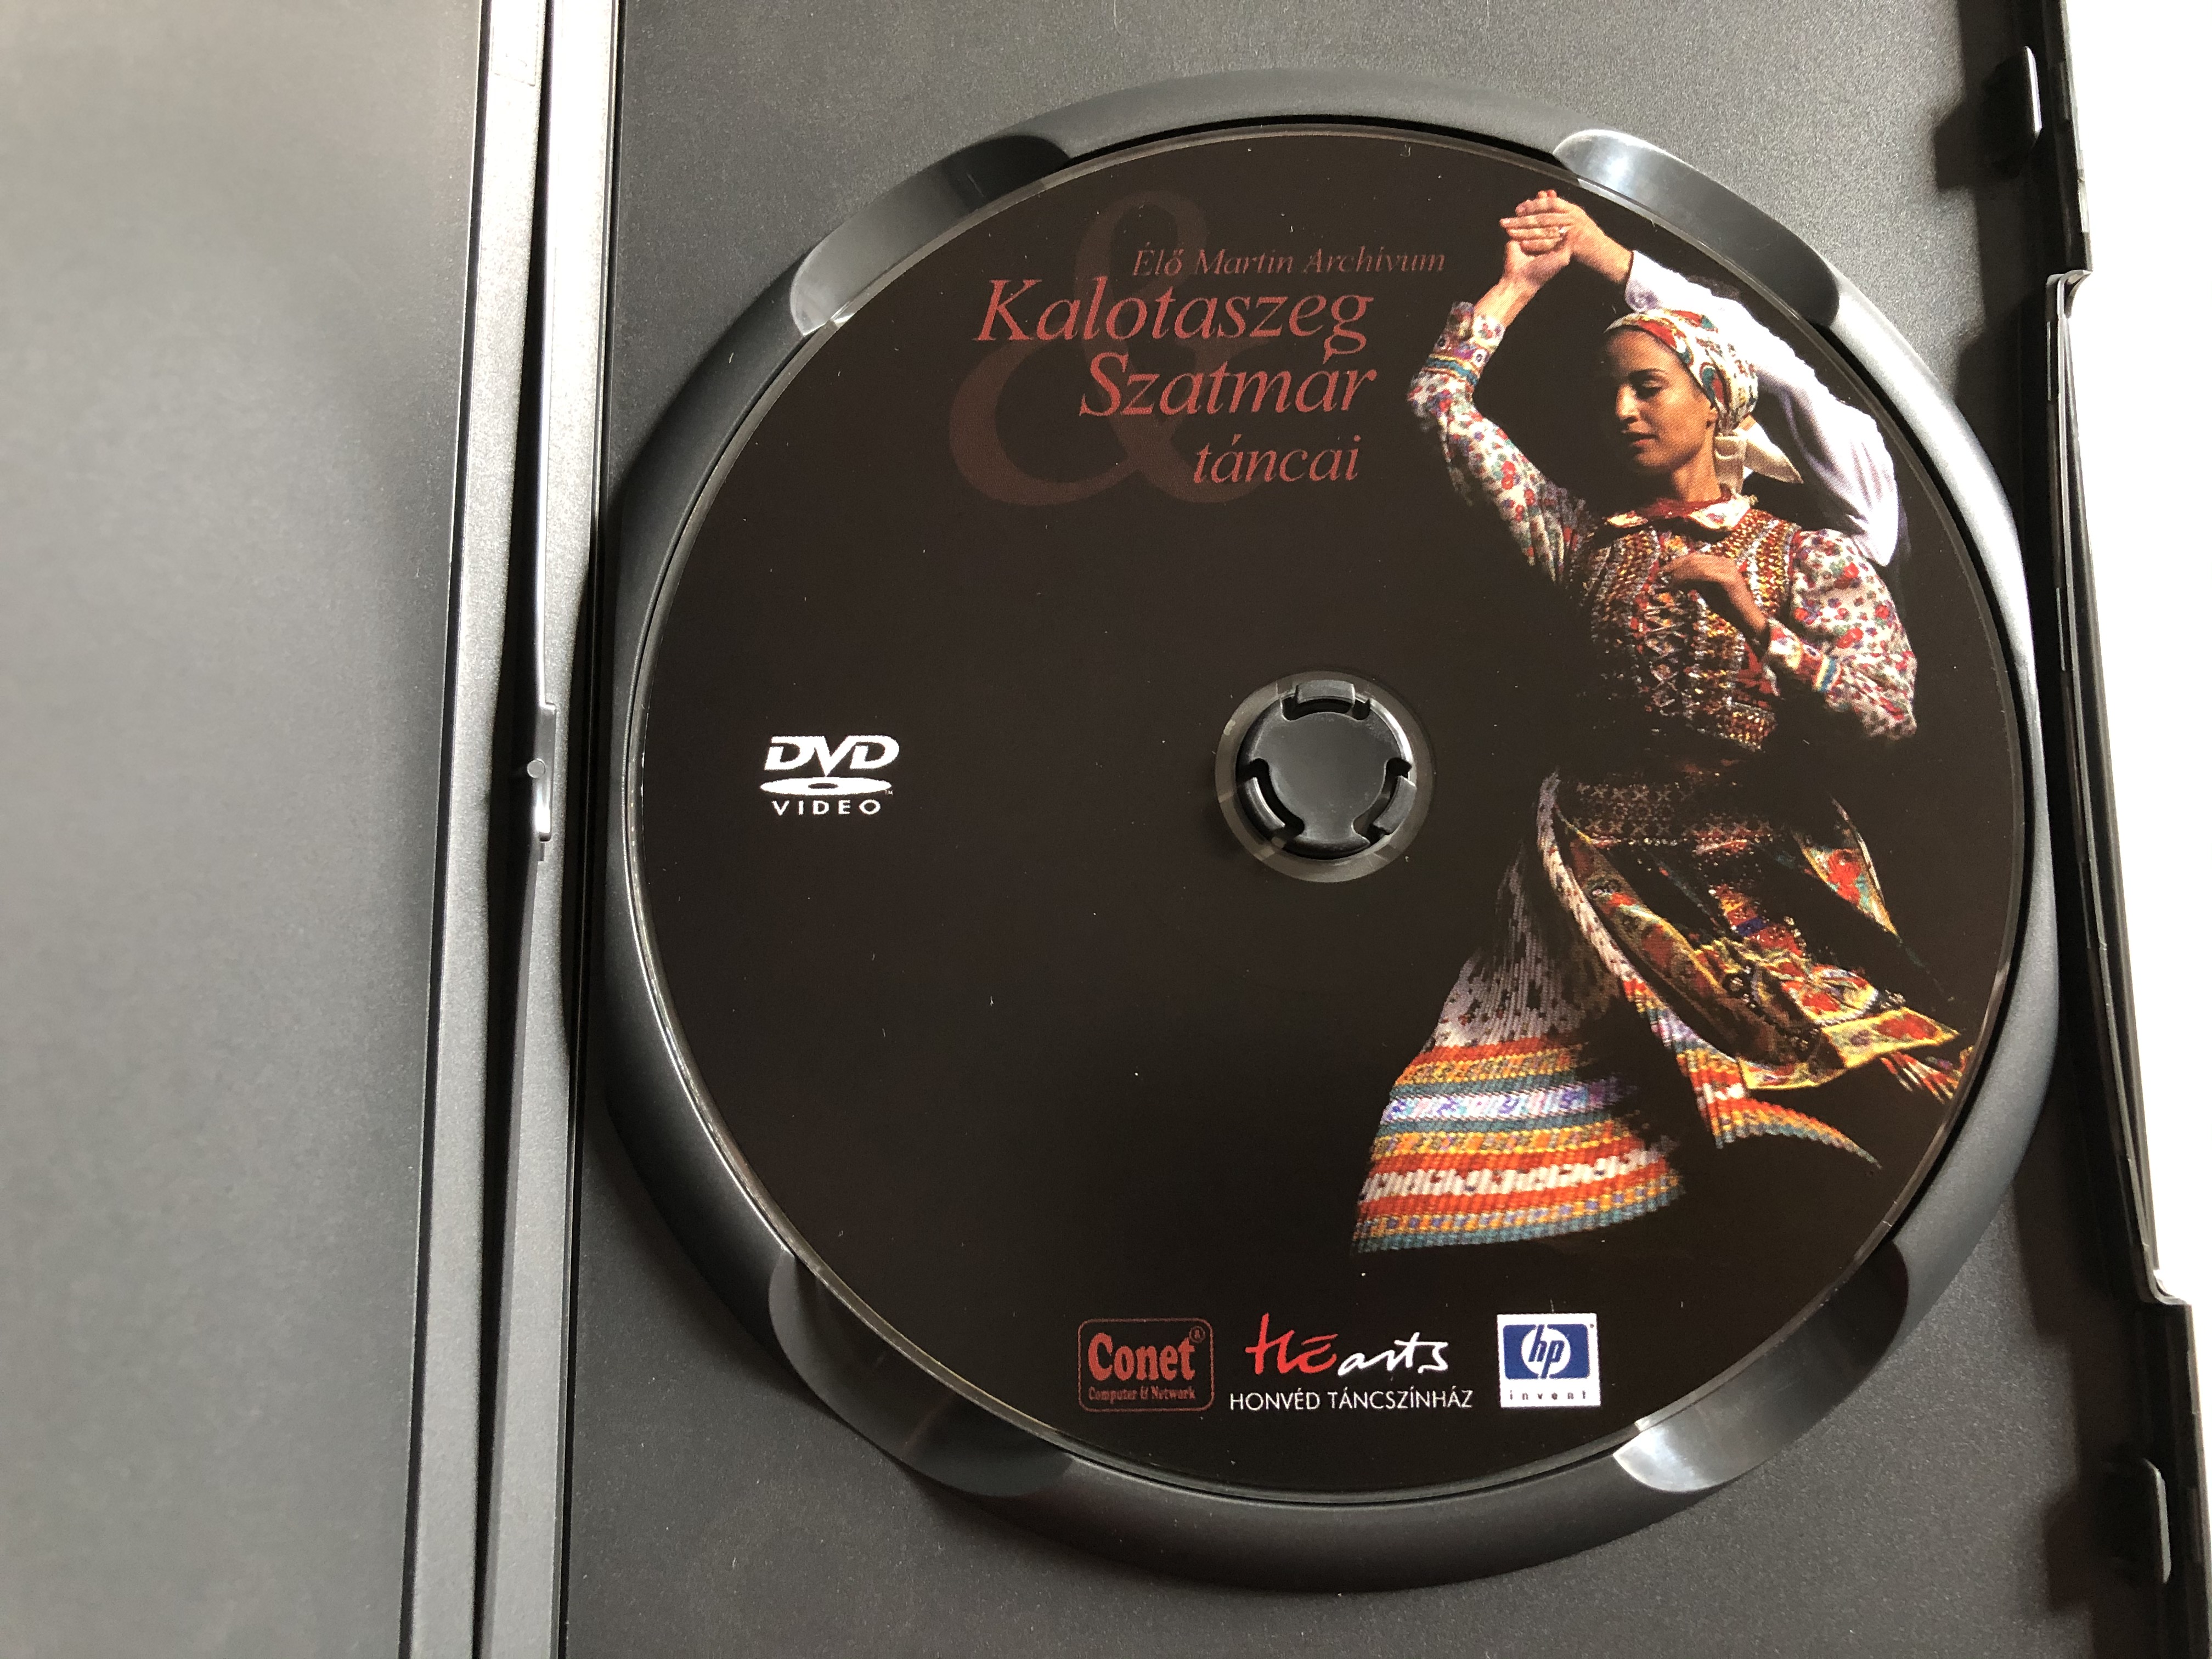 Kalotaszeg & Szatmár táncai DVD 1.JPG